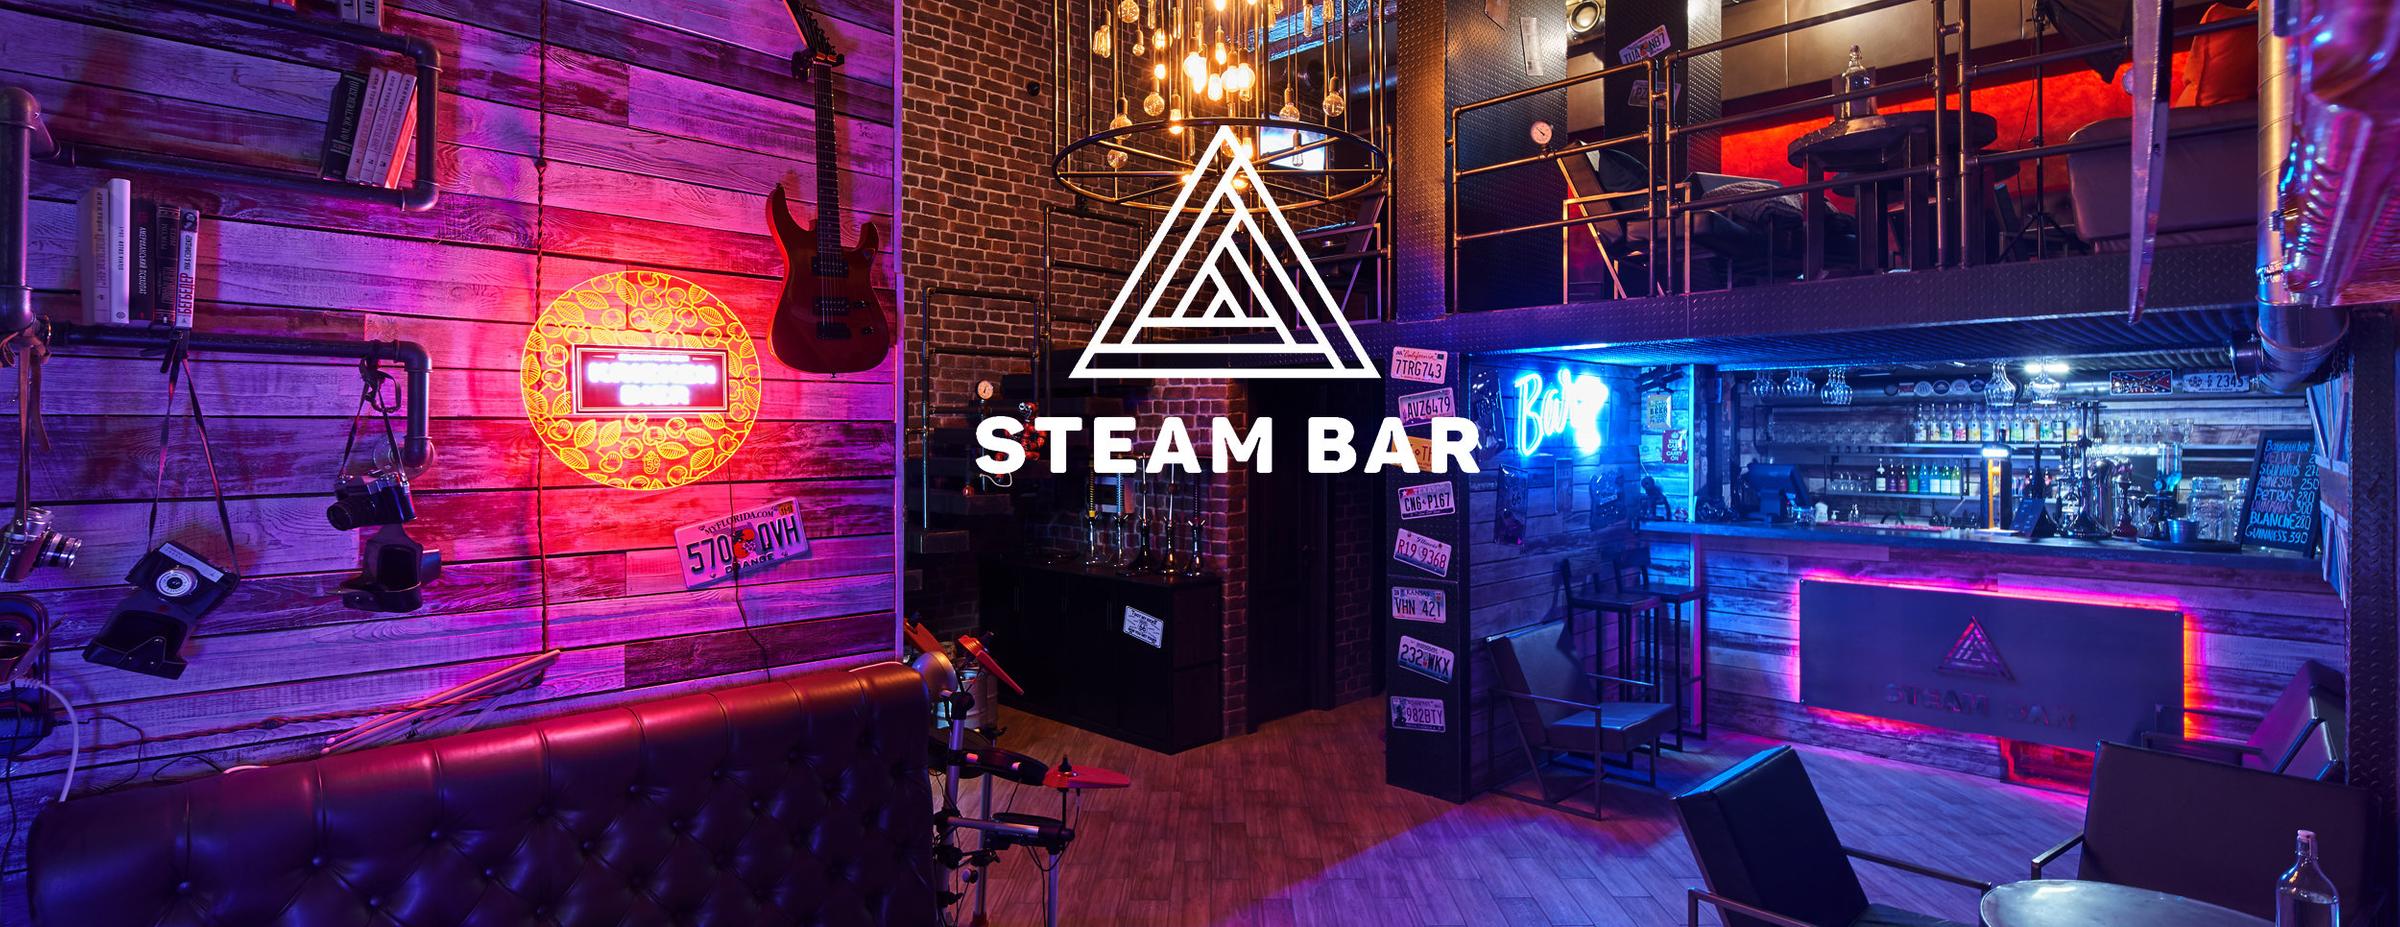 Steam bar menu